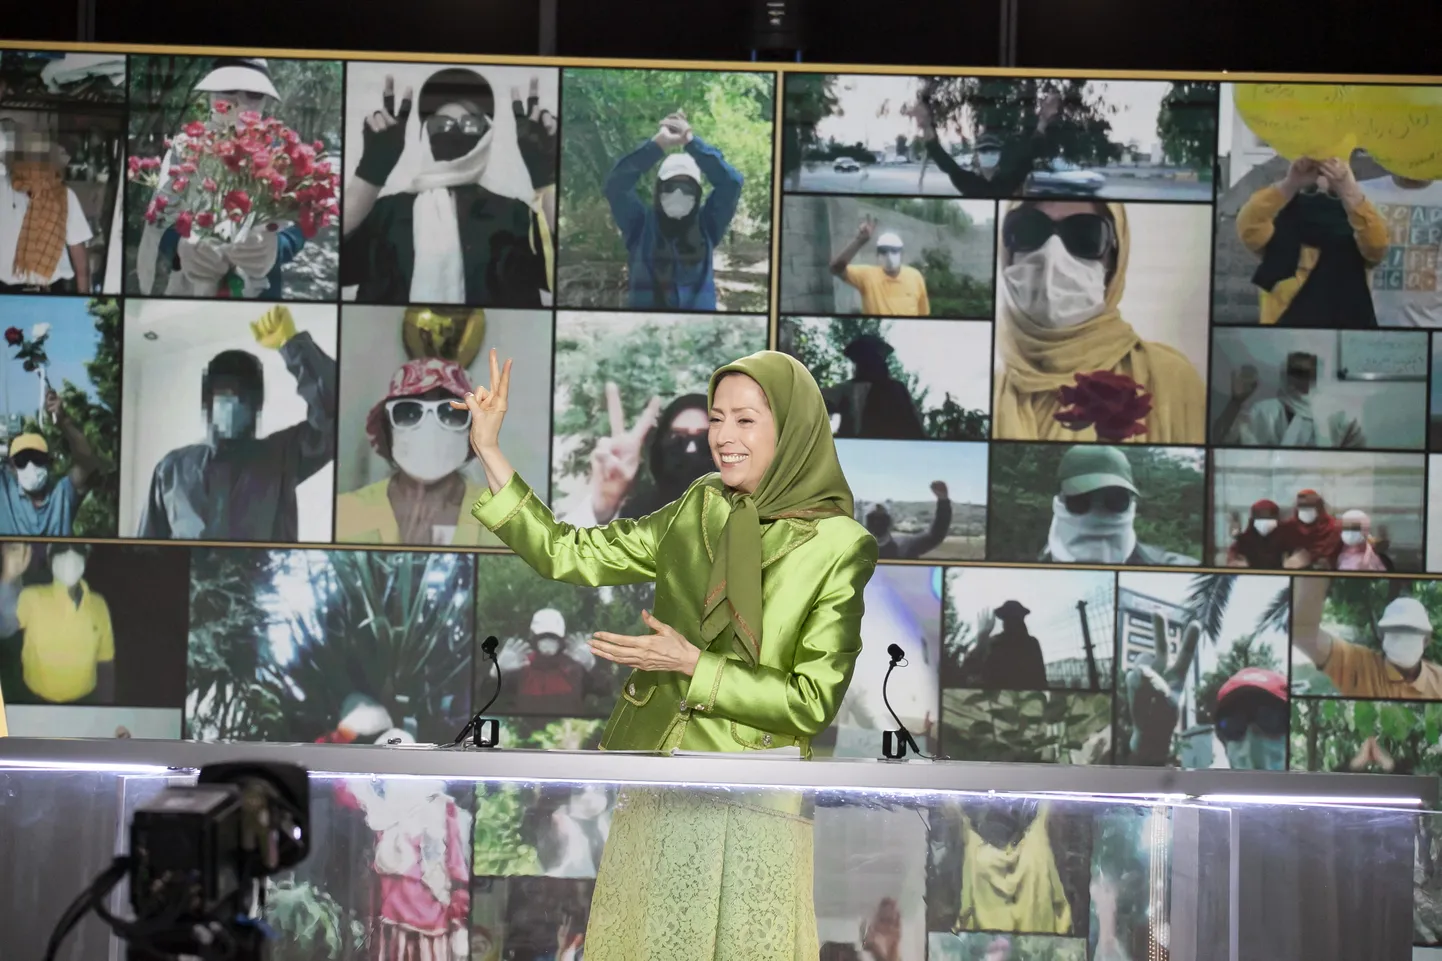 Iraani vastupanuliikumise juht Maryam Rajavi tervisas Pariisi eeslinnnas Auvers-Sur-Oise's enam kui kuuekümnest riigist oma toetus avaldama tulnud poliitikuid ja riigimehi. Oma kõnes valgustas Rajavi olukorda Iraanis ning meenutas oma kümnepunktilist inimõigustele rõhuvat tegevusplaani.